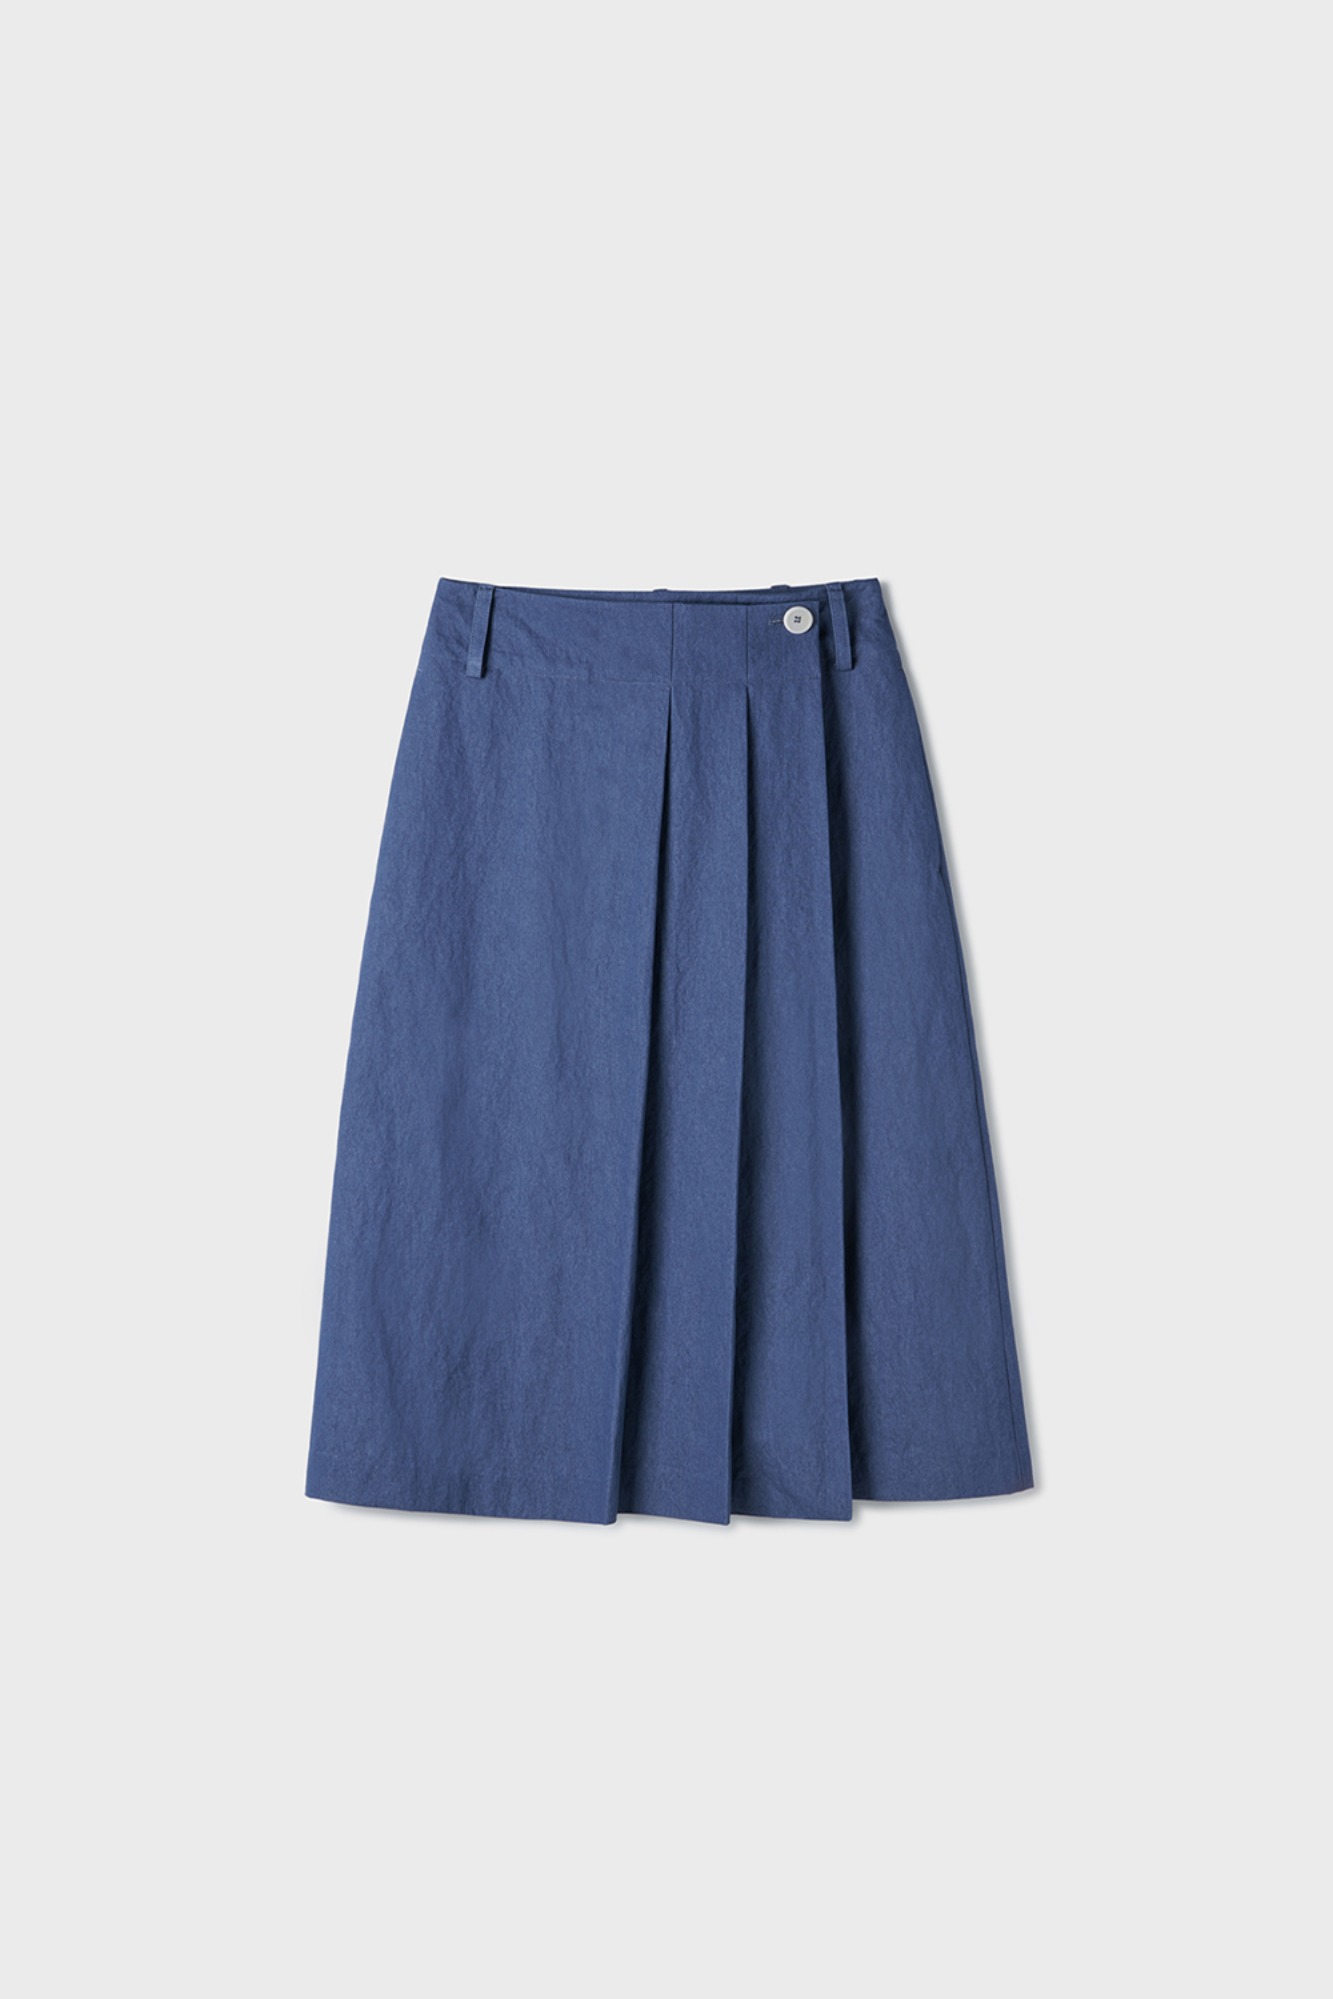 Rian Pleats Midi Skirt